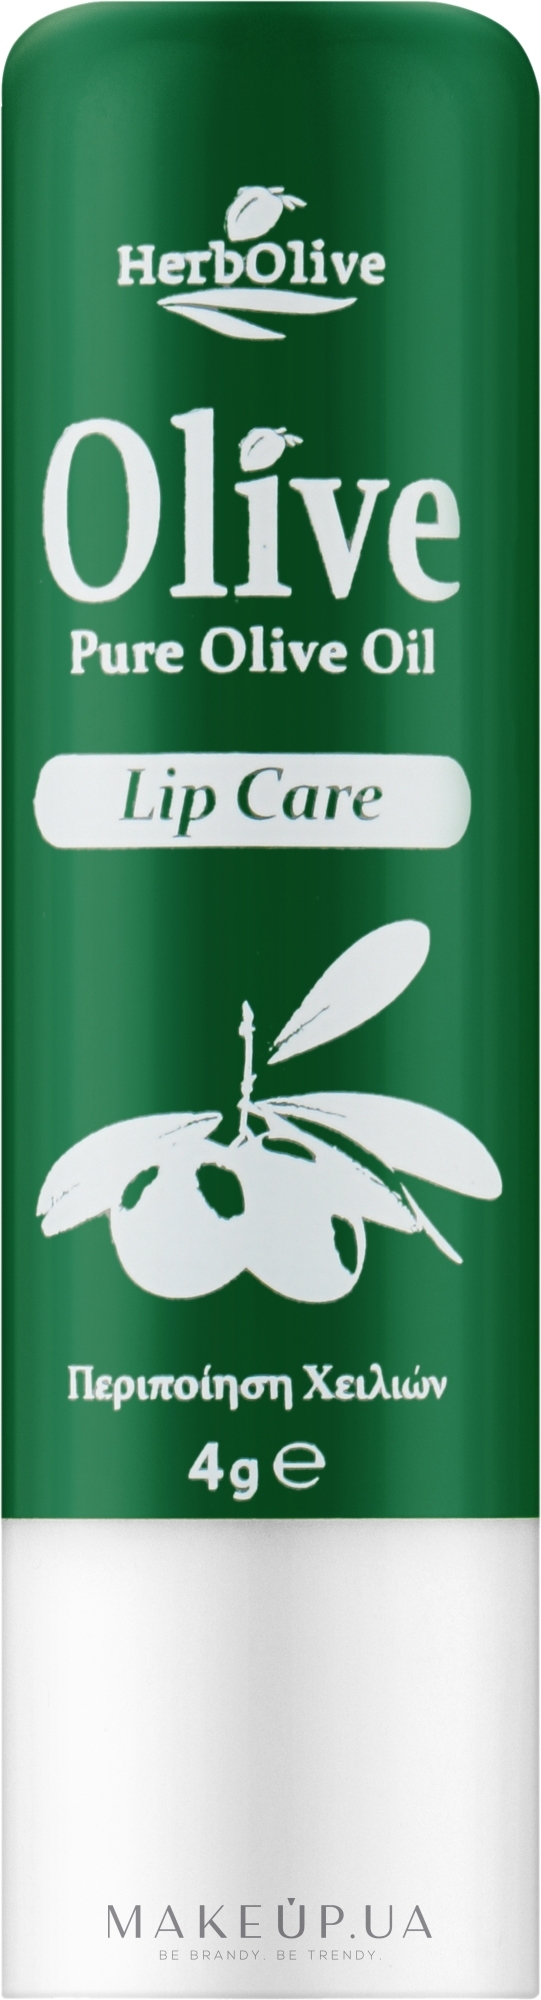 Бальзам для губ с оливковым маслом - Madis HerbOlive Lip Care — фото 4.5g